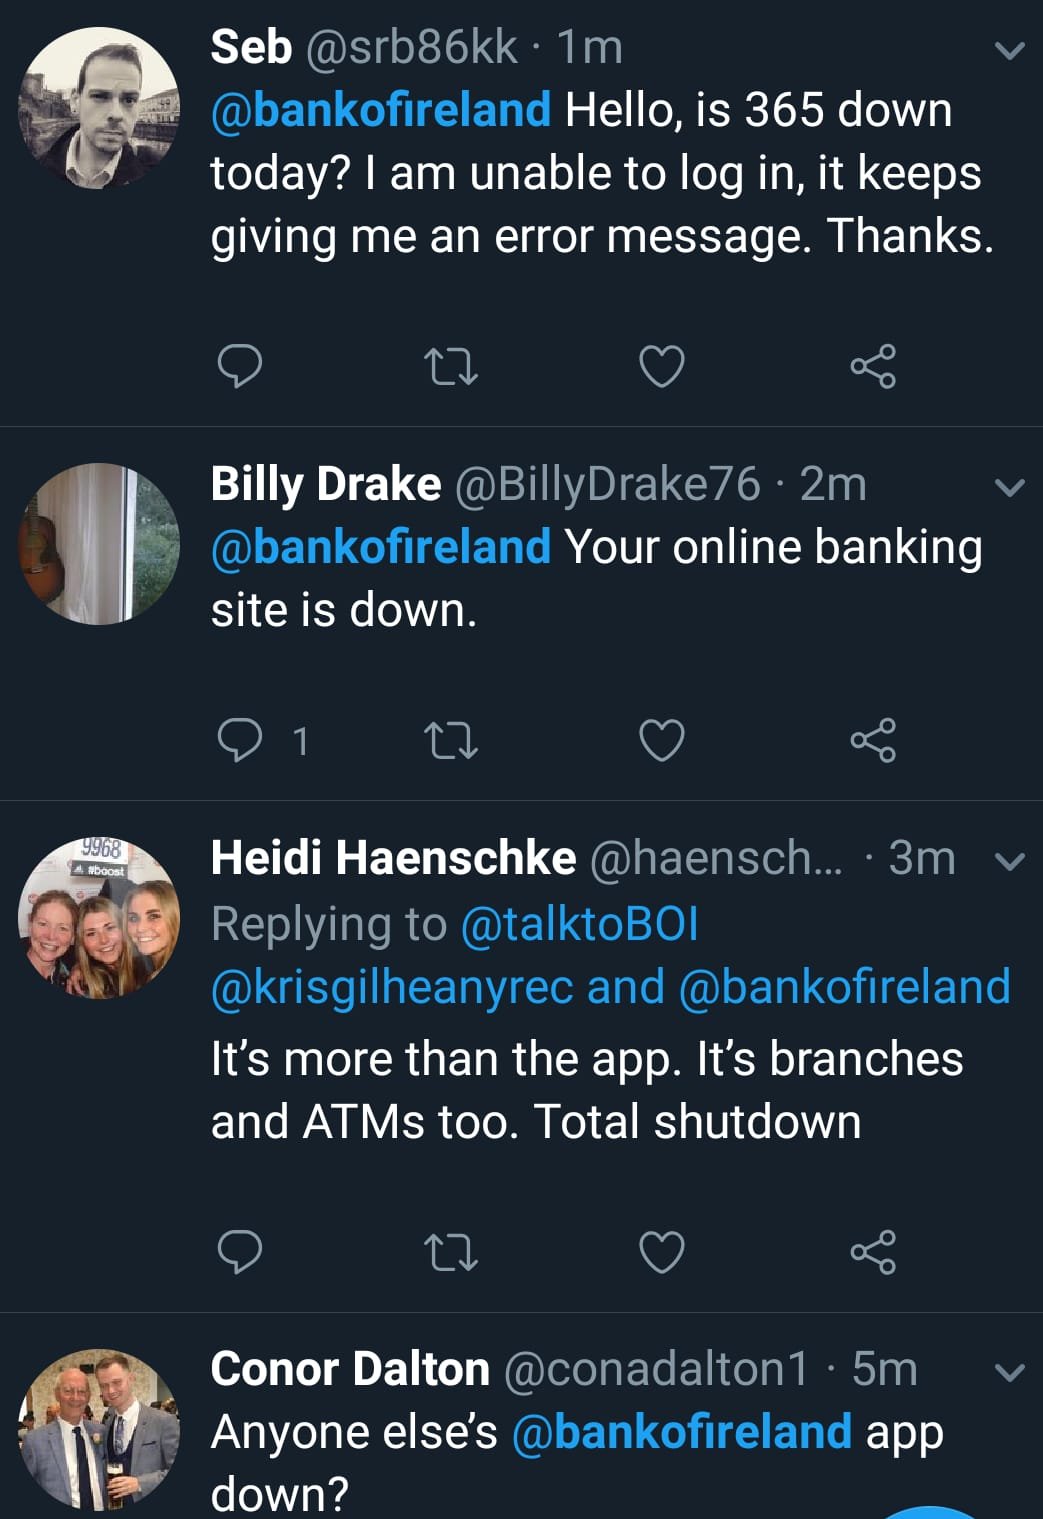  Bank of Ireland App down